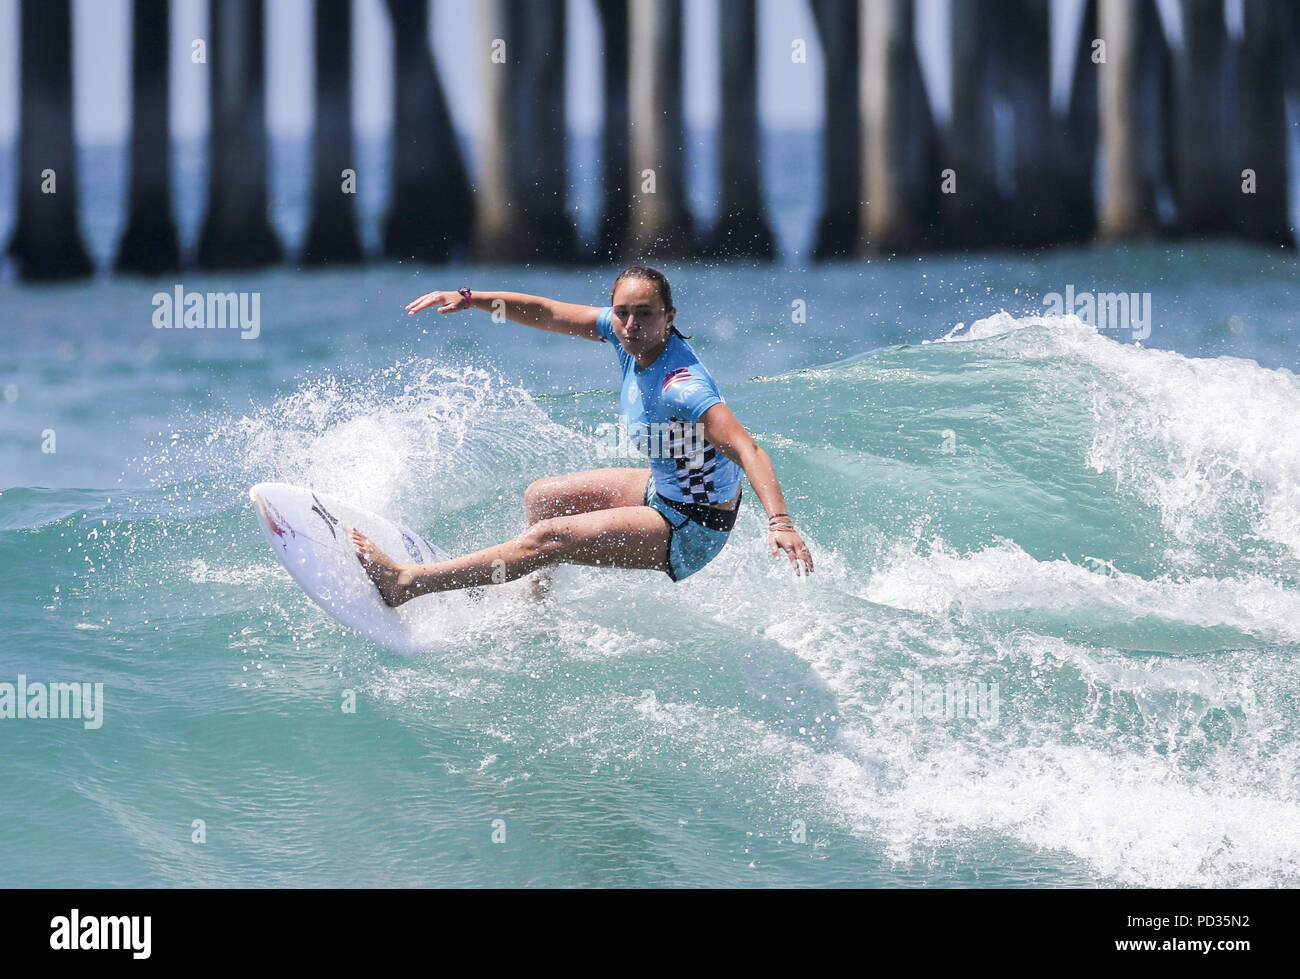 5 août 2018 - Los Angeles, Californie, États-Unis - Carissa Moore participe à la demi-finale à l'US Open de Surf Vans le 5 août 2018 à Huntington Beach, en Californie. (Crédit Image : © Ringo Chiu via Zuma sur le fil) Banque D'Images